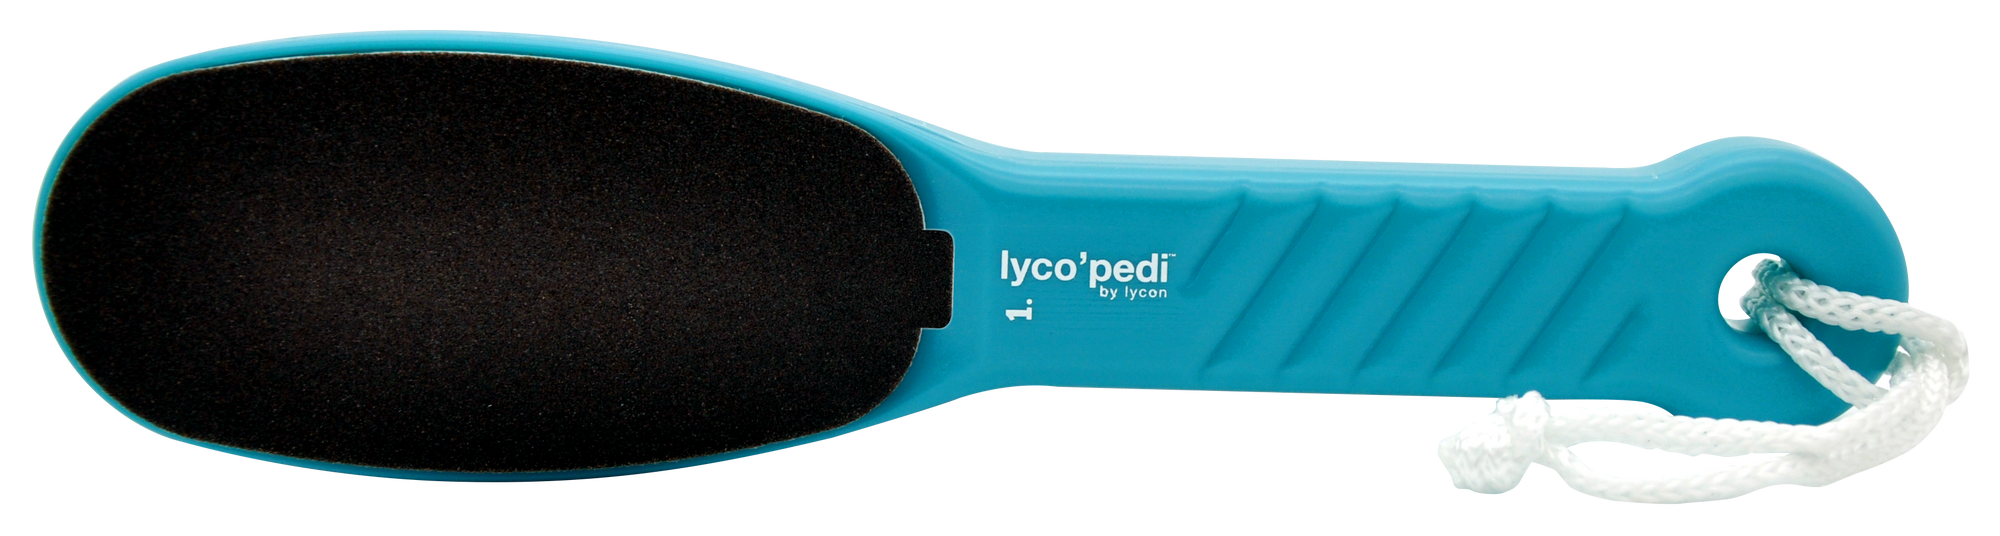 Lyco'Pedi Pedi Paddle